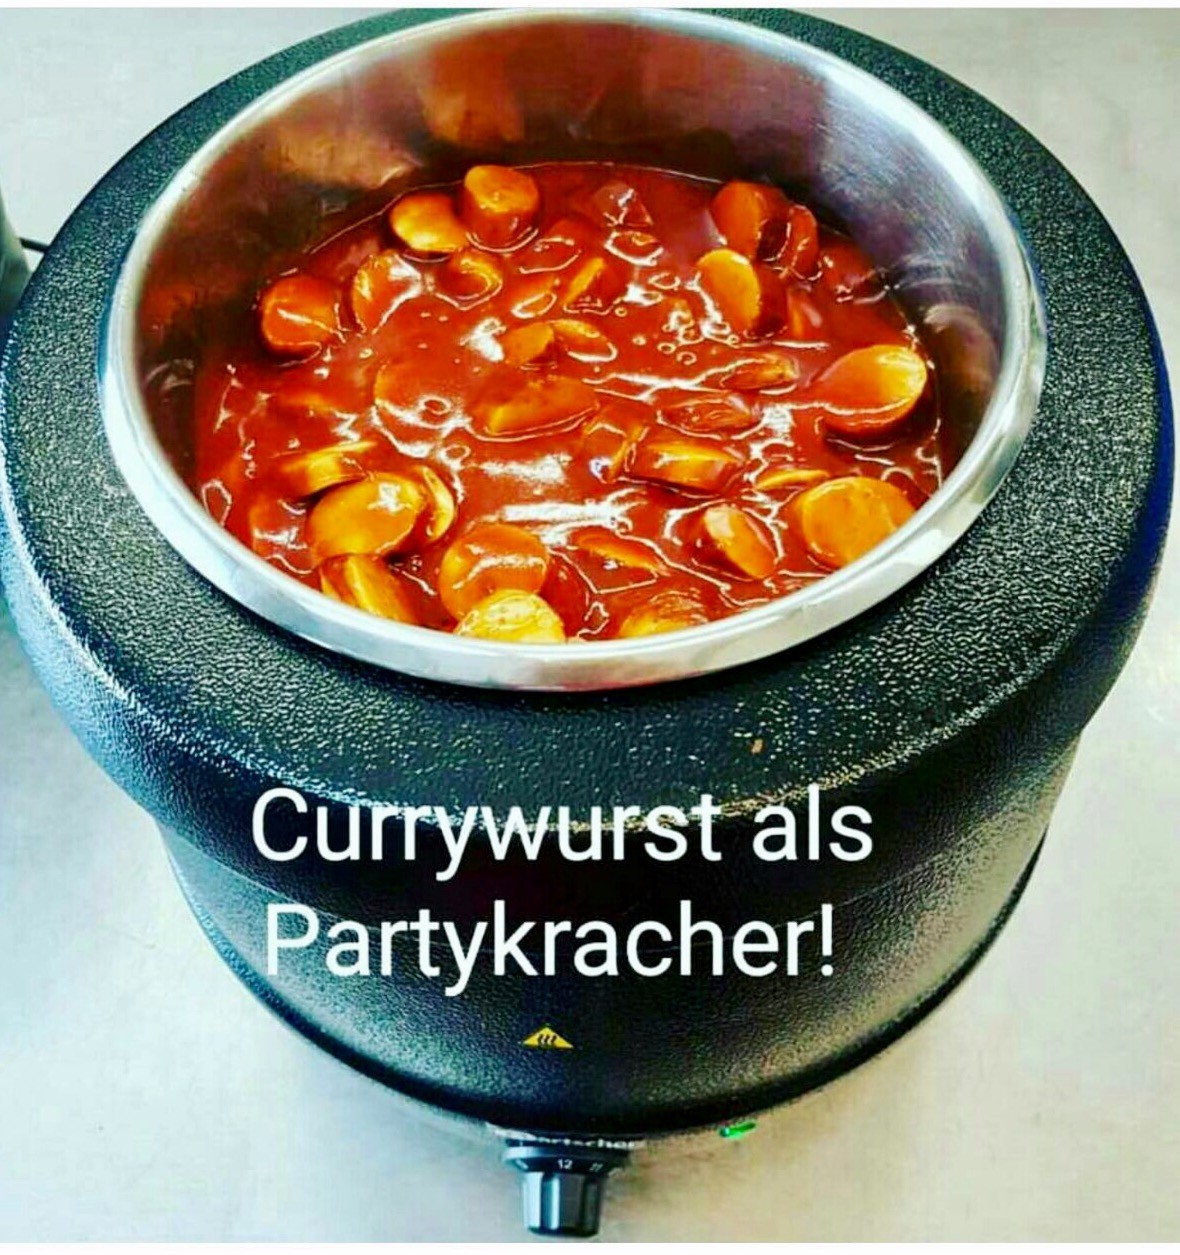 Currywurst als Partykracher